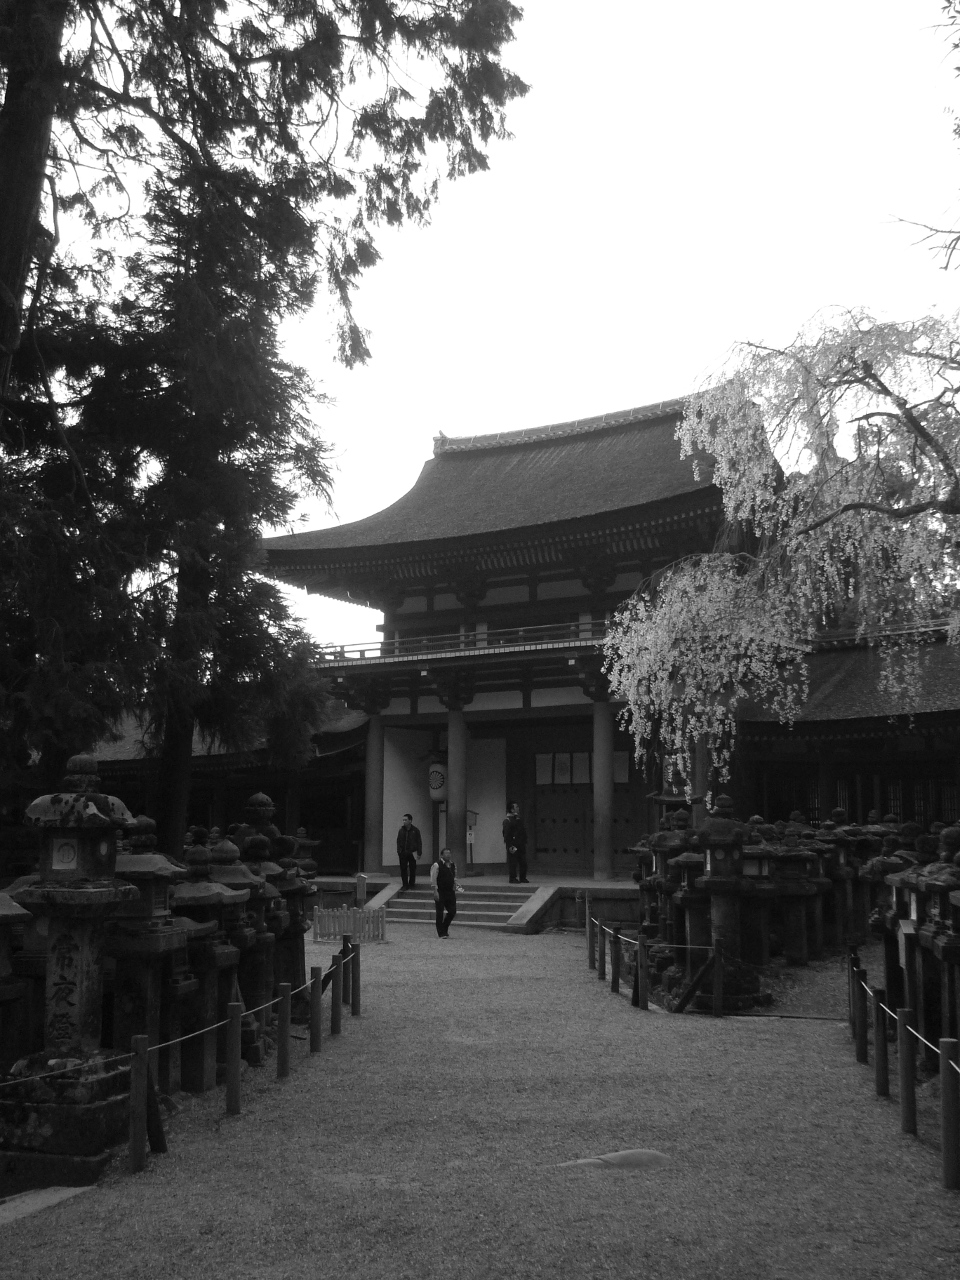 Trois hommes devant l'entrée d'un temple et devant le jardin de lanternes de pierre.